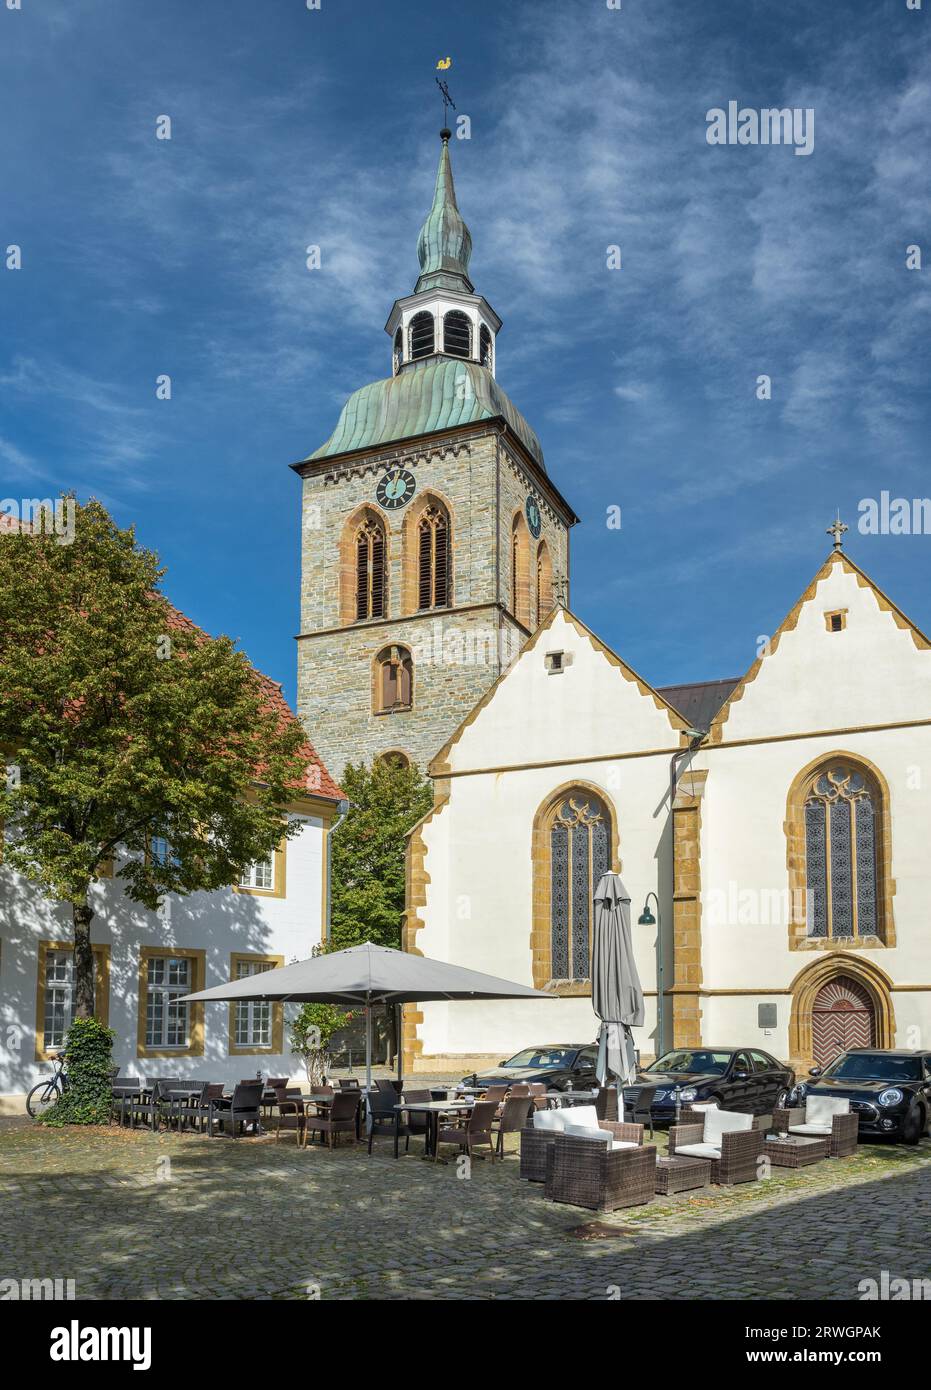 Altstadt von Wiedenbrück mit der Kirche St. Aegidius, Rheda-Wiedenbrück, Ostwestfalen-Lippe, Nordrhein-Westfalen, Deutschland Stockfoto